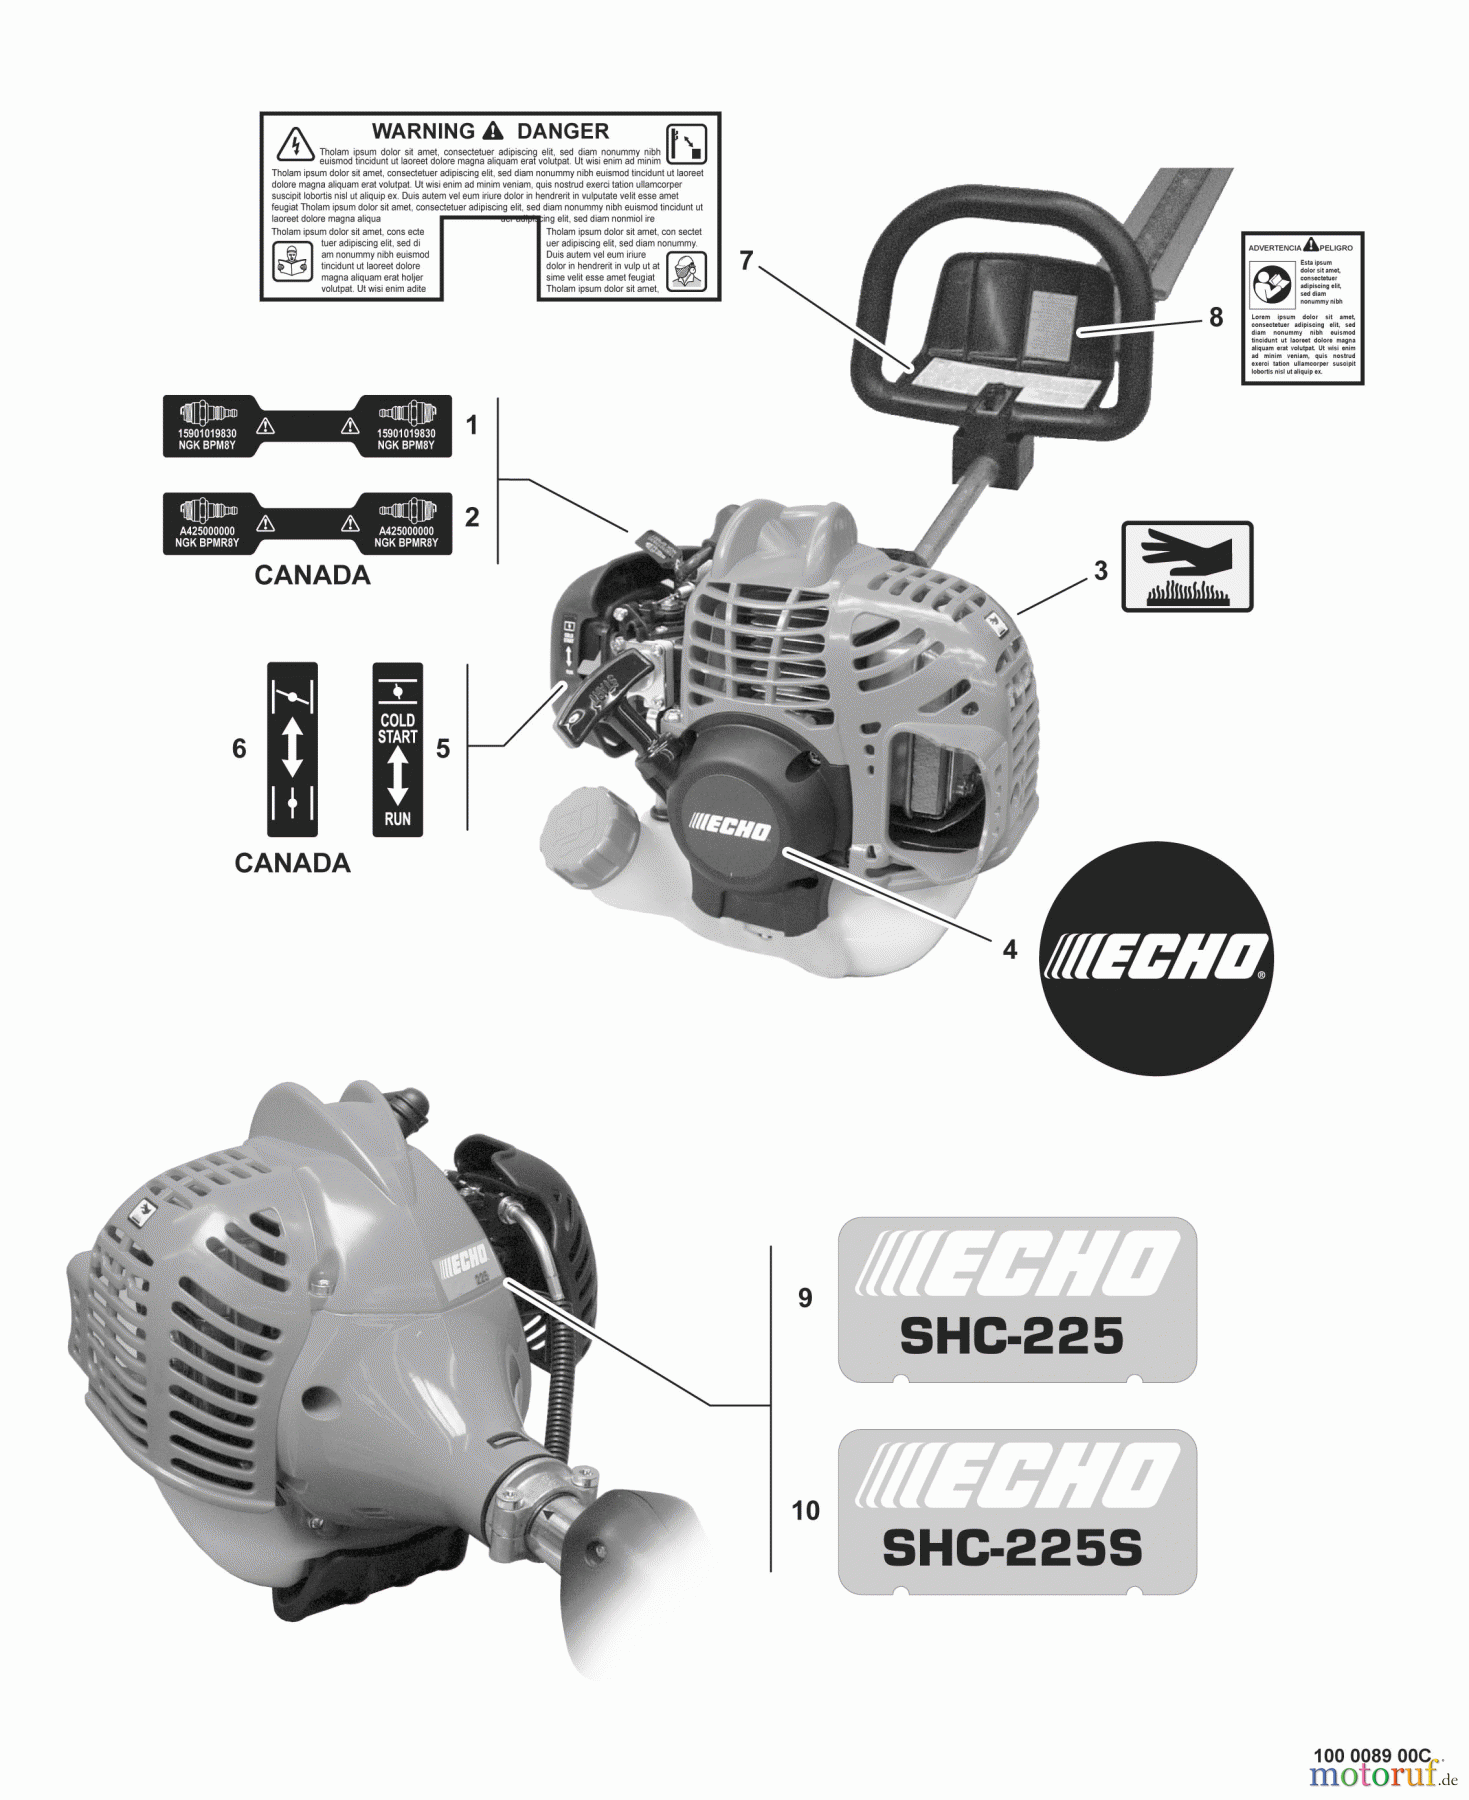  Echo Heckenscheren SHC-225 - Echo Shaft Hedge Trimmer, S/N: S85411001001 - S85411999999 Labels